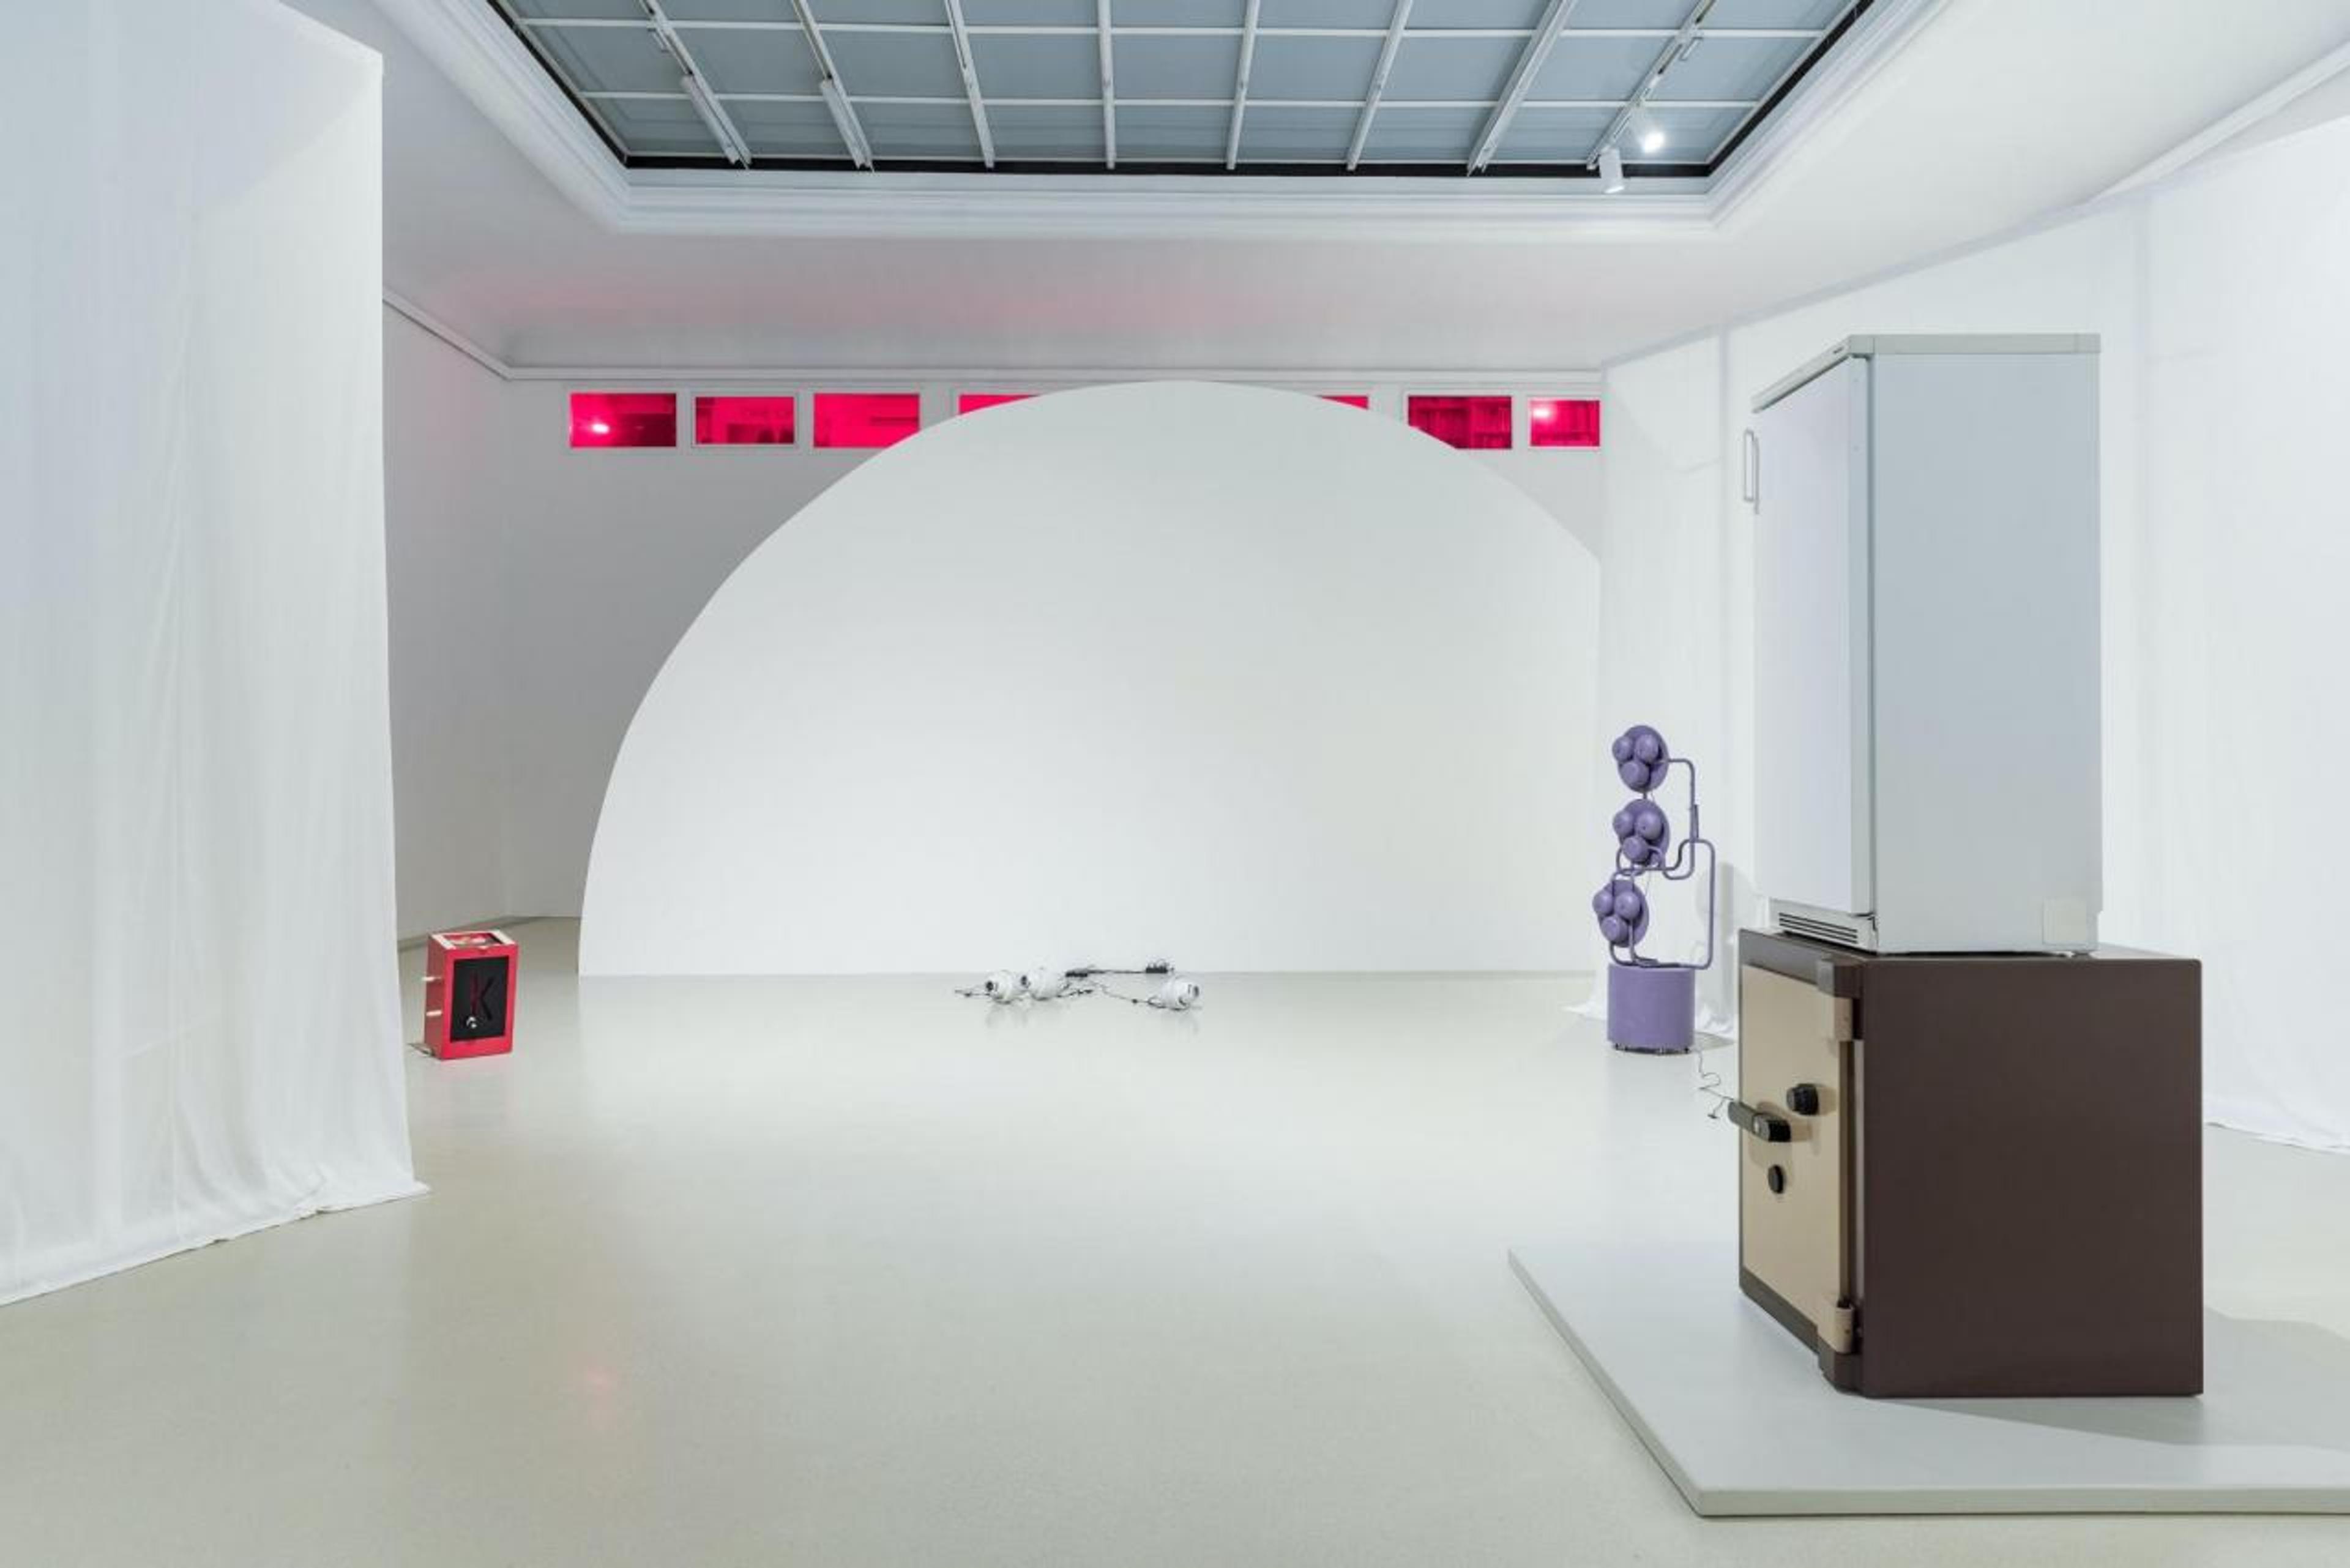 &ldquo;Domestic Drama&rdquo;(2021/22), installation view from Halle für Kunst Steiermark